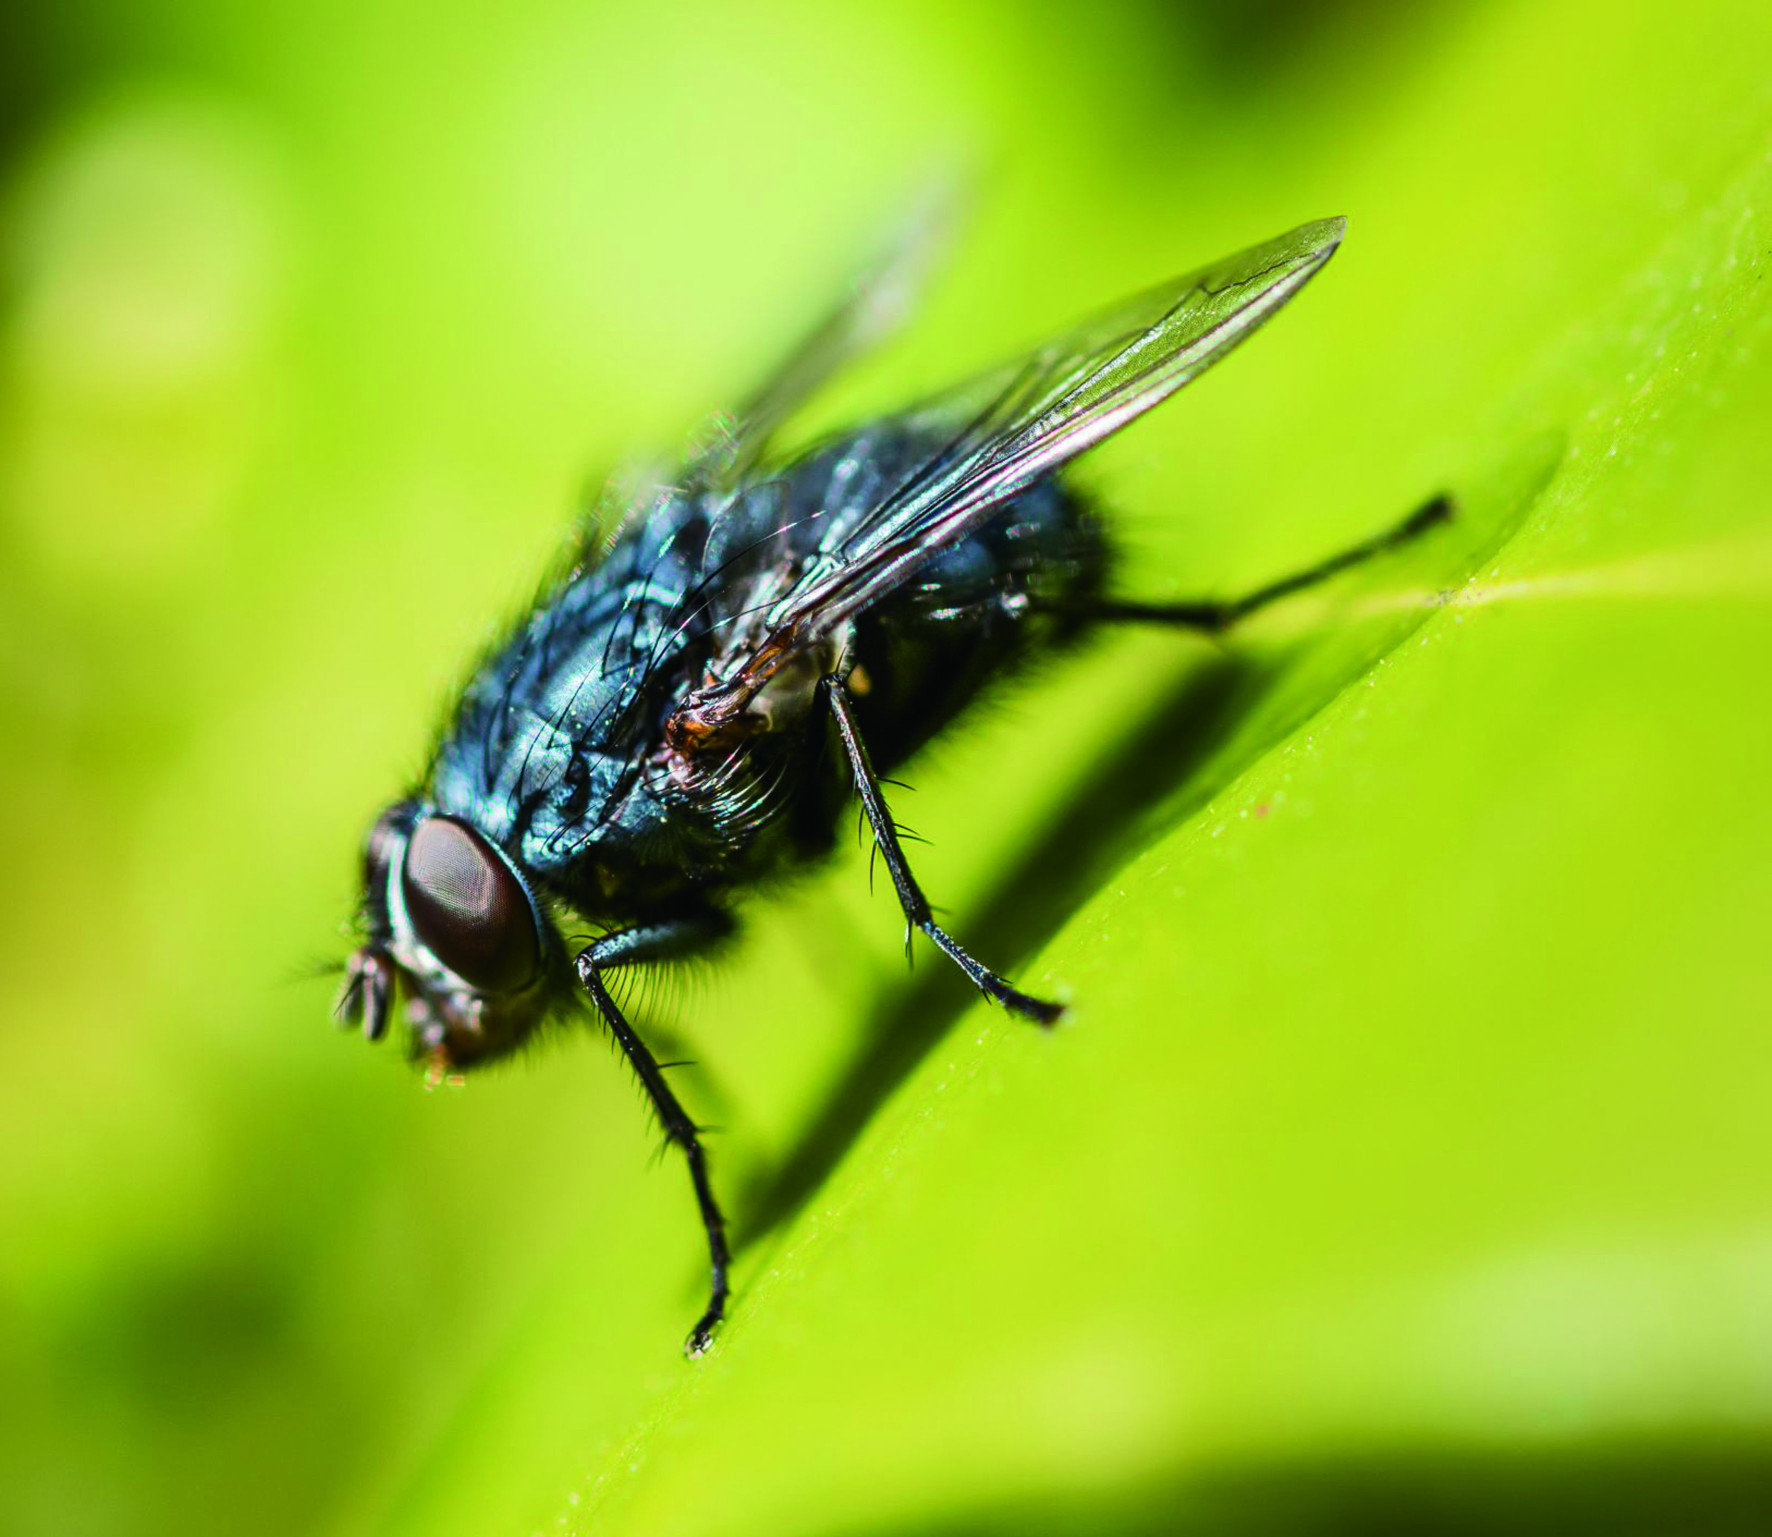 另一種常見的蒼蠅叫做「反吐麗蠅」，或稱作「麗蠅」，
大小比家蠅稍微大一些，色彩十分繽紛，擁有金屬亮藍色的胸部、
亮紫色的腹部、粉紅色的觸角。牠們喜歡在垃圾桶附近活動，
以動物糞便與屍體為主要飲食來源，因此傳播的病菌也特別多。